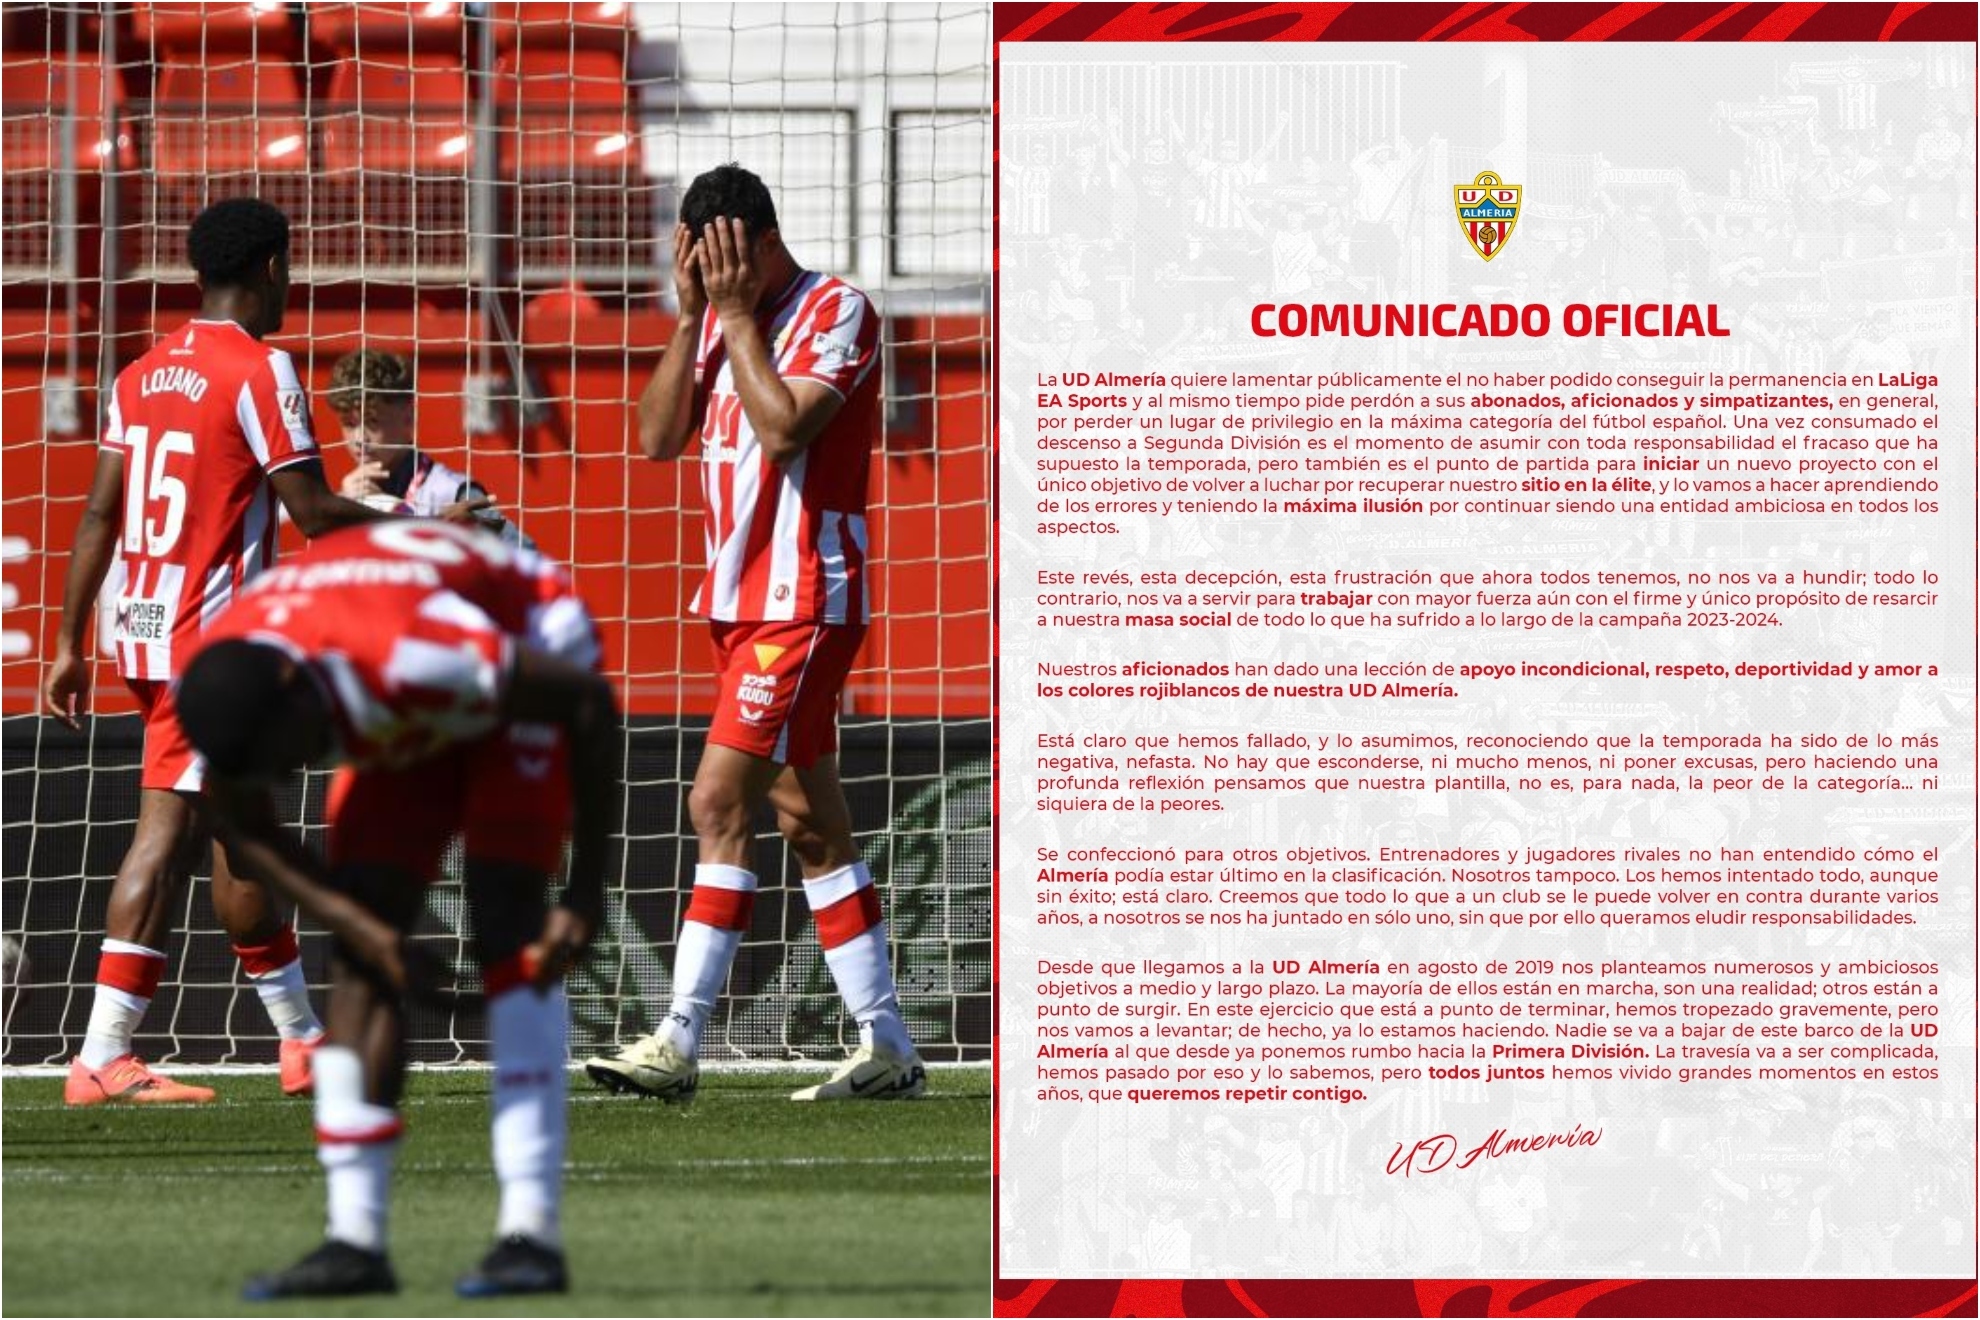 Un montaje con una imagen de los jugadores del Almer�a lament�ndose y otra del comunicado del club.